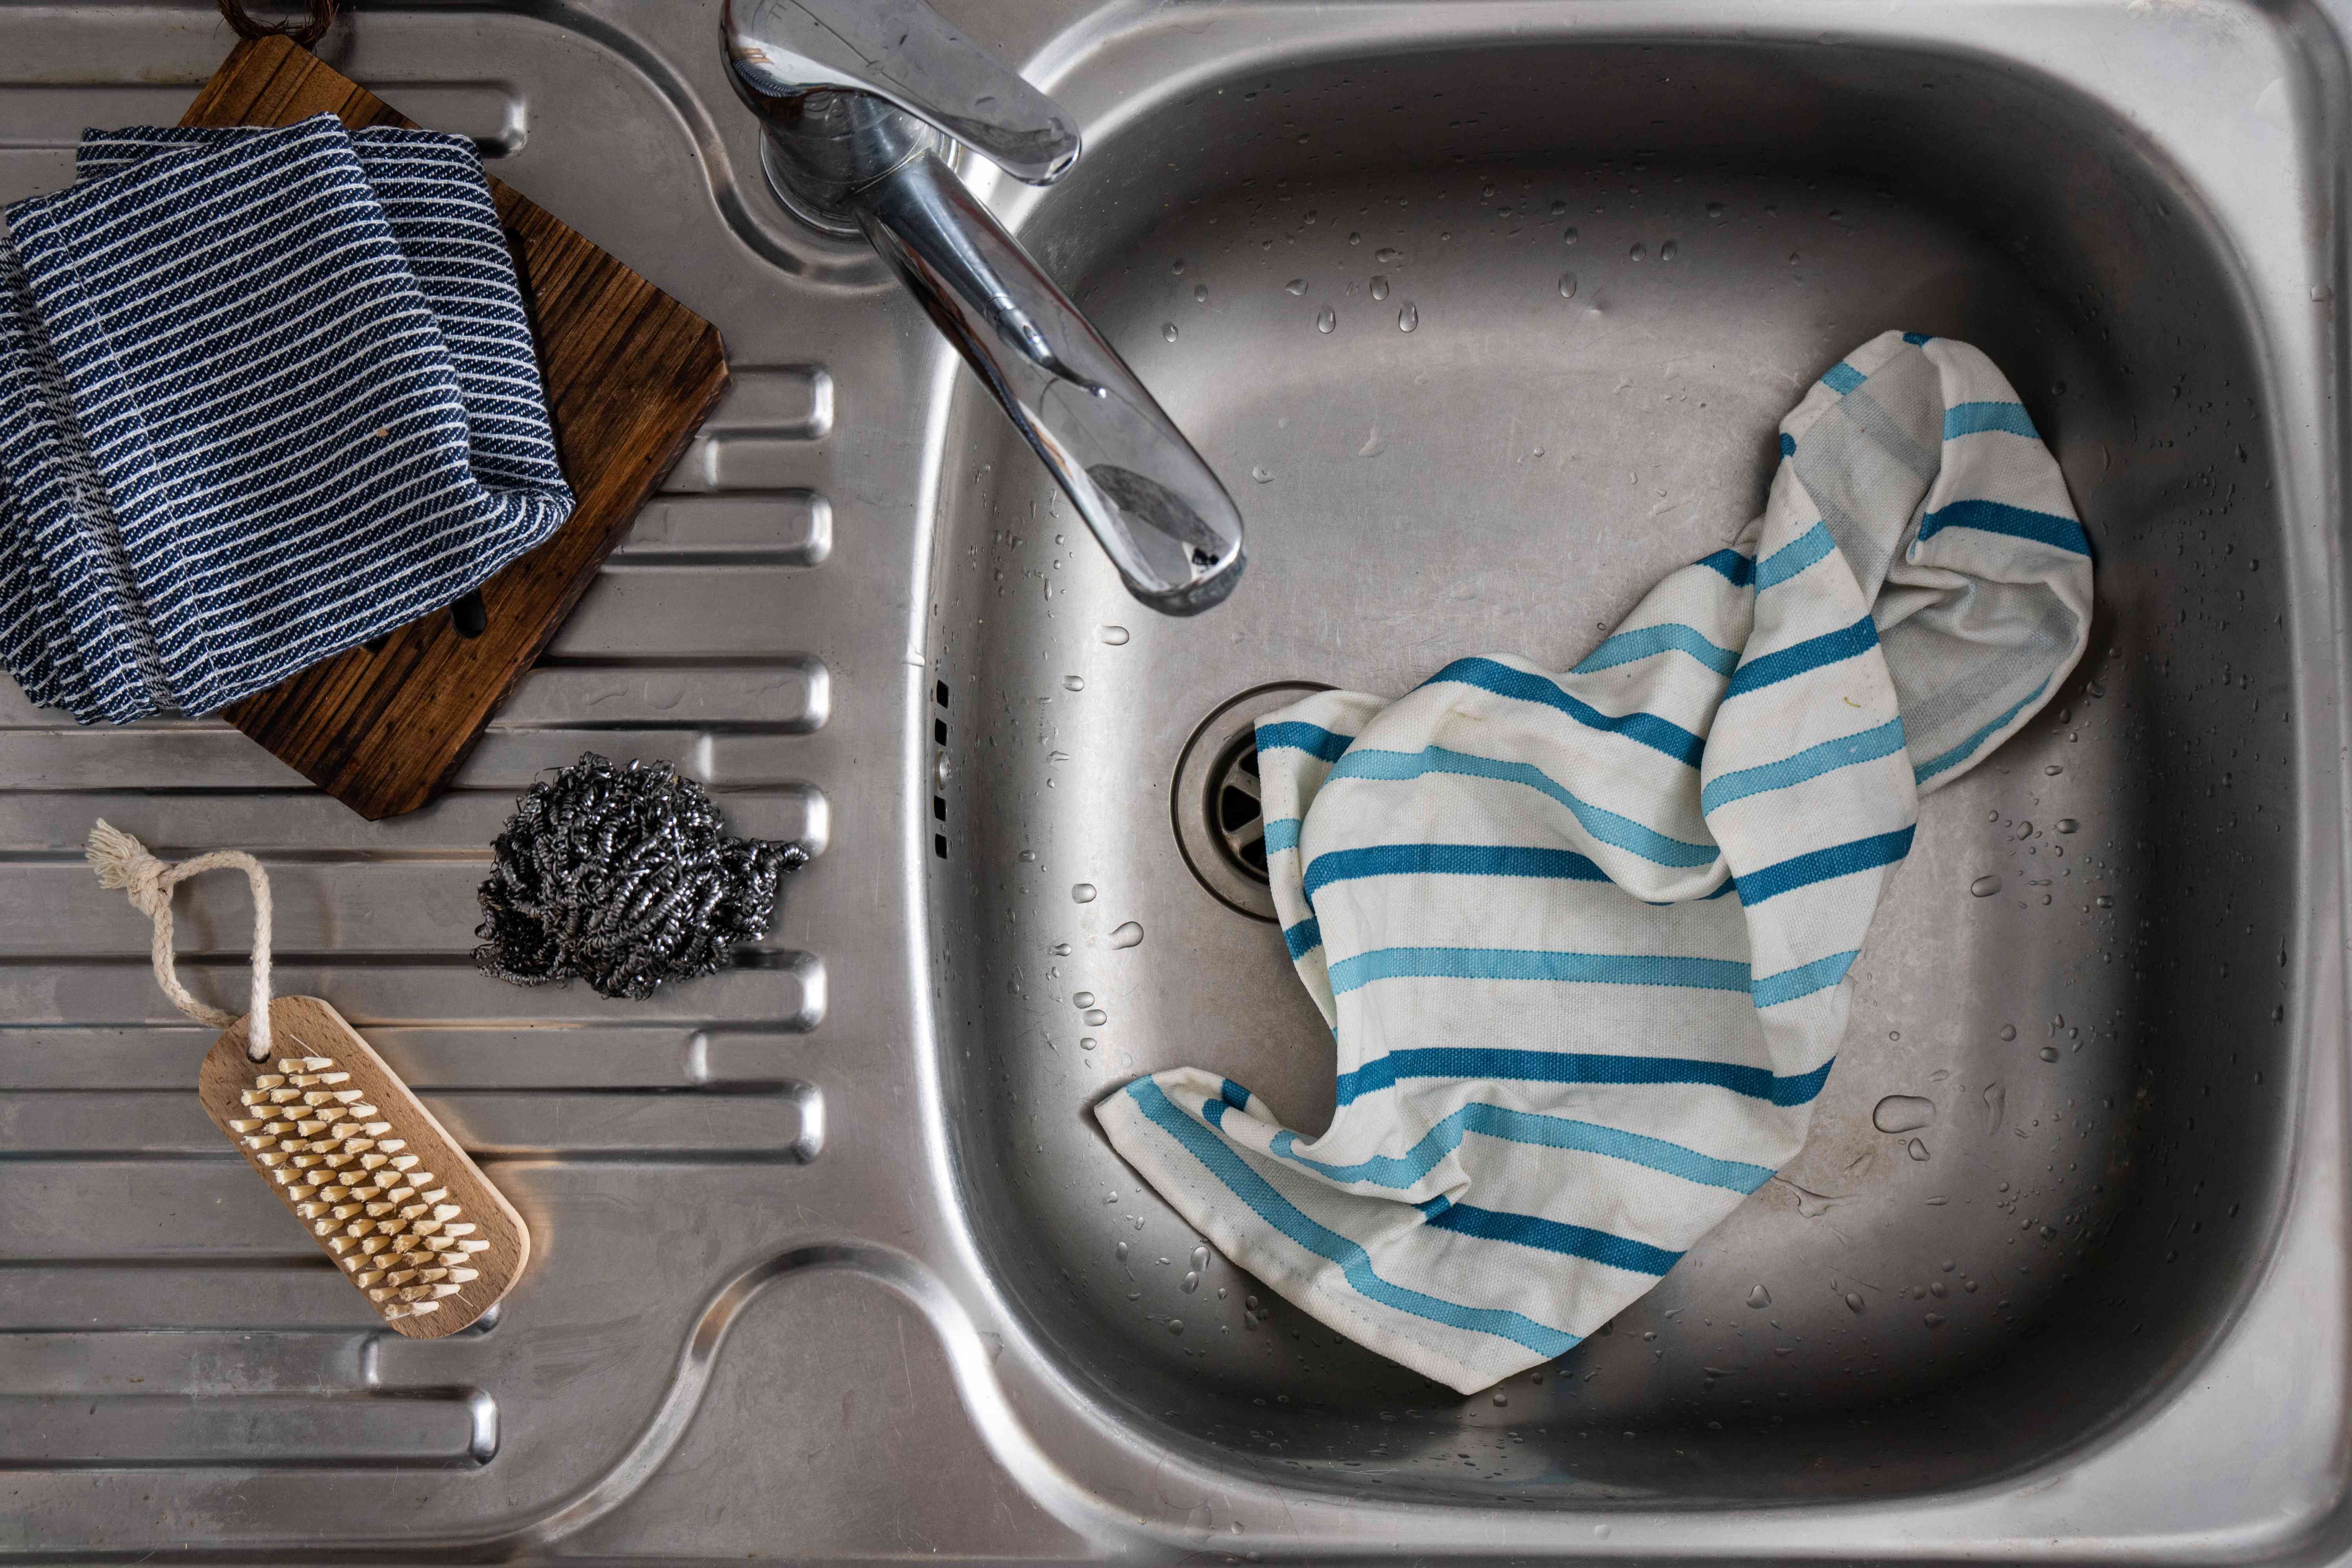 把湿抹布放在厨房的钢制洗涤槽里会吸引果蝇